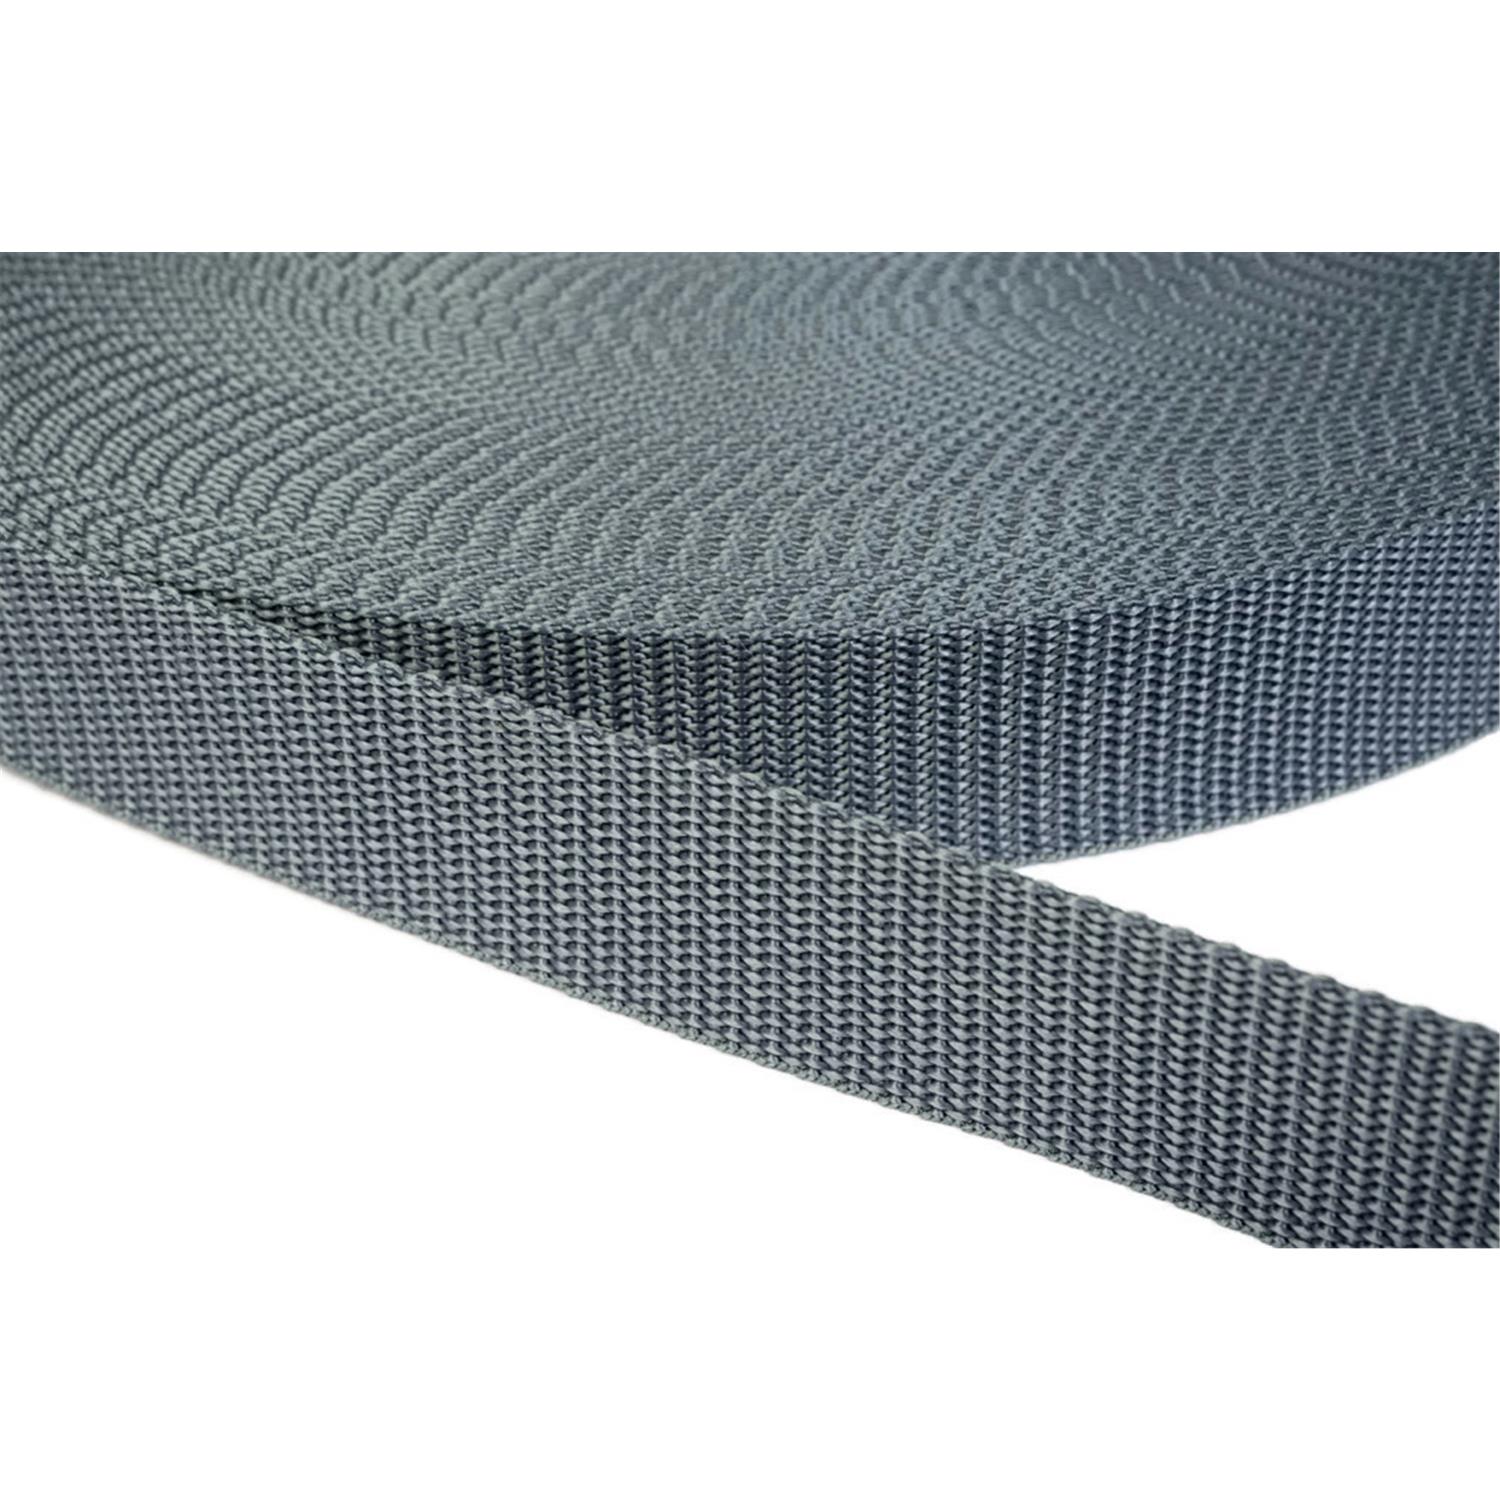 Gurtband 20mm breit aus Polypropylen in 41 Farben 38 - mittelgrau 06 Meter